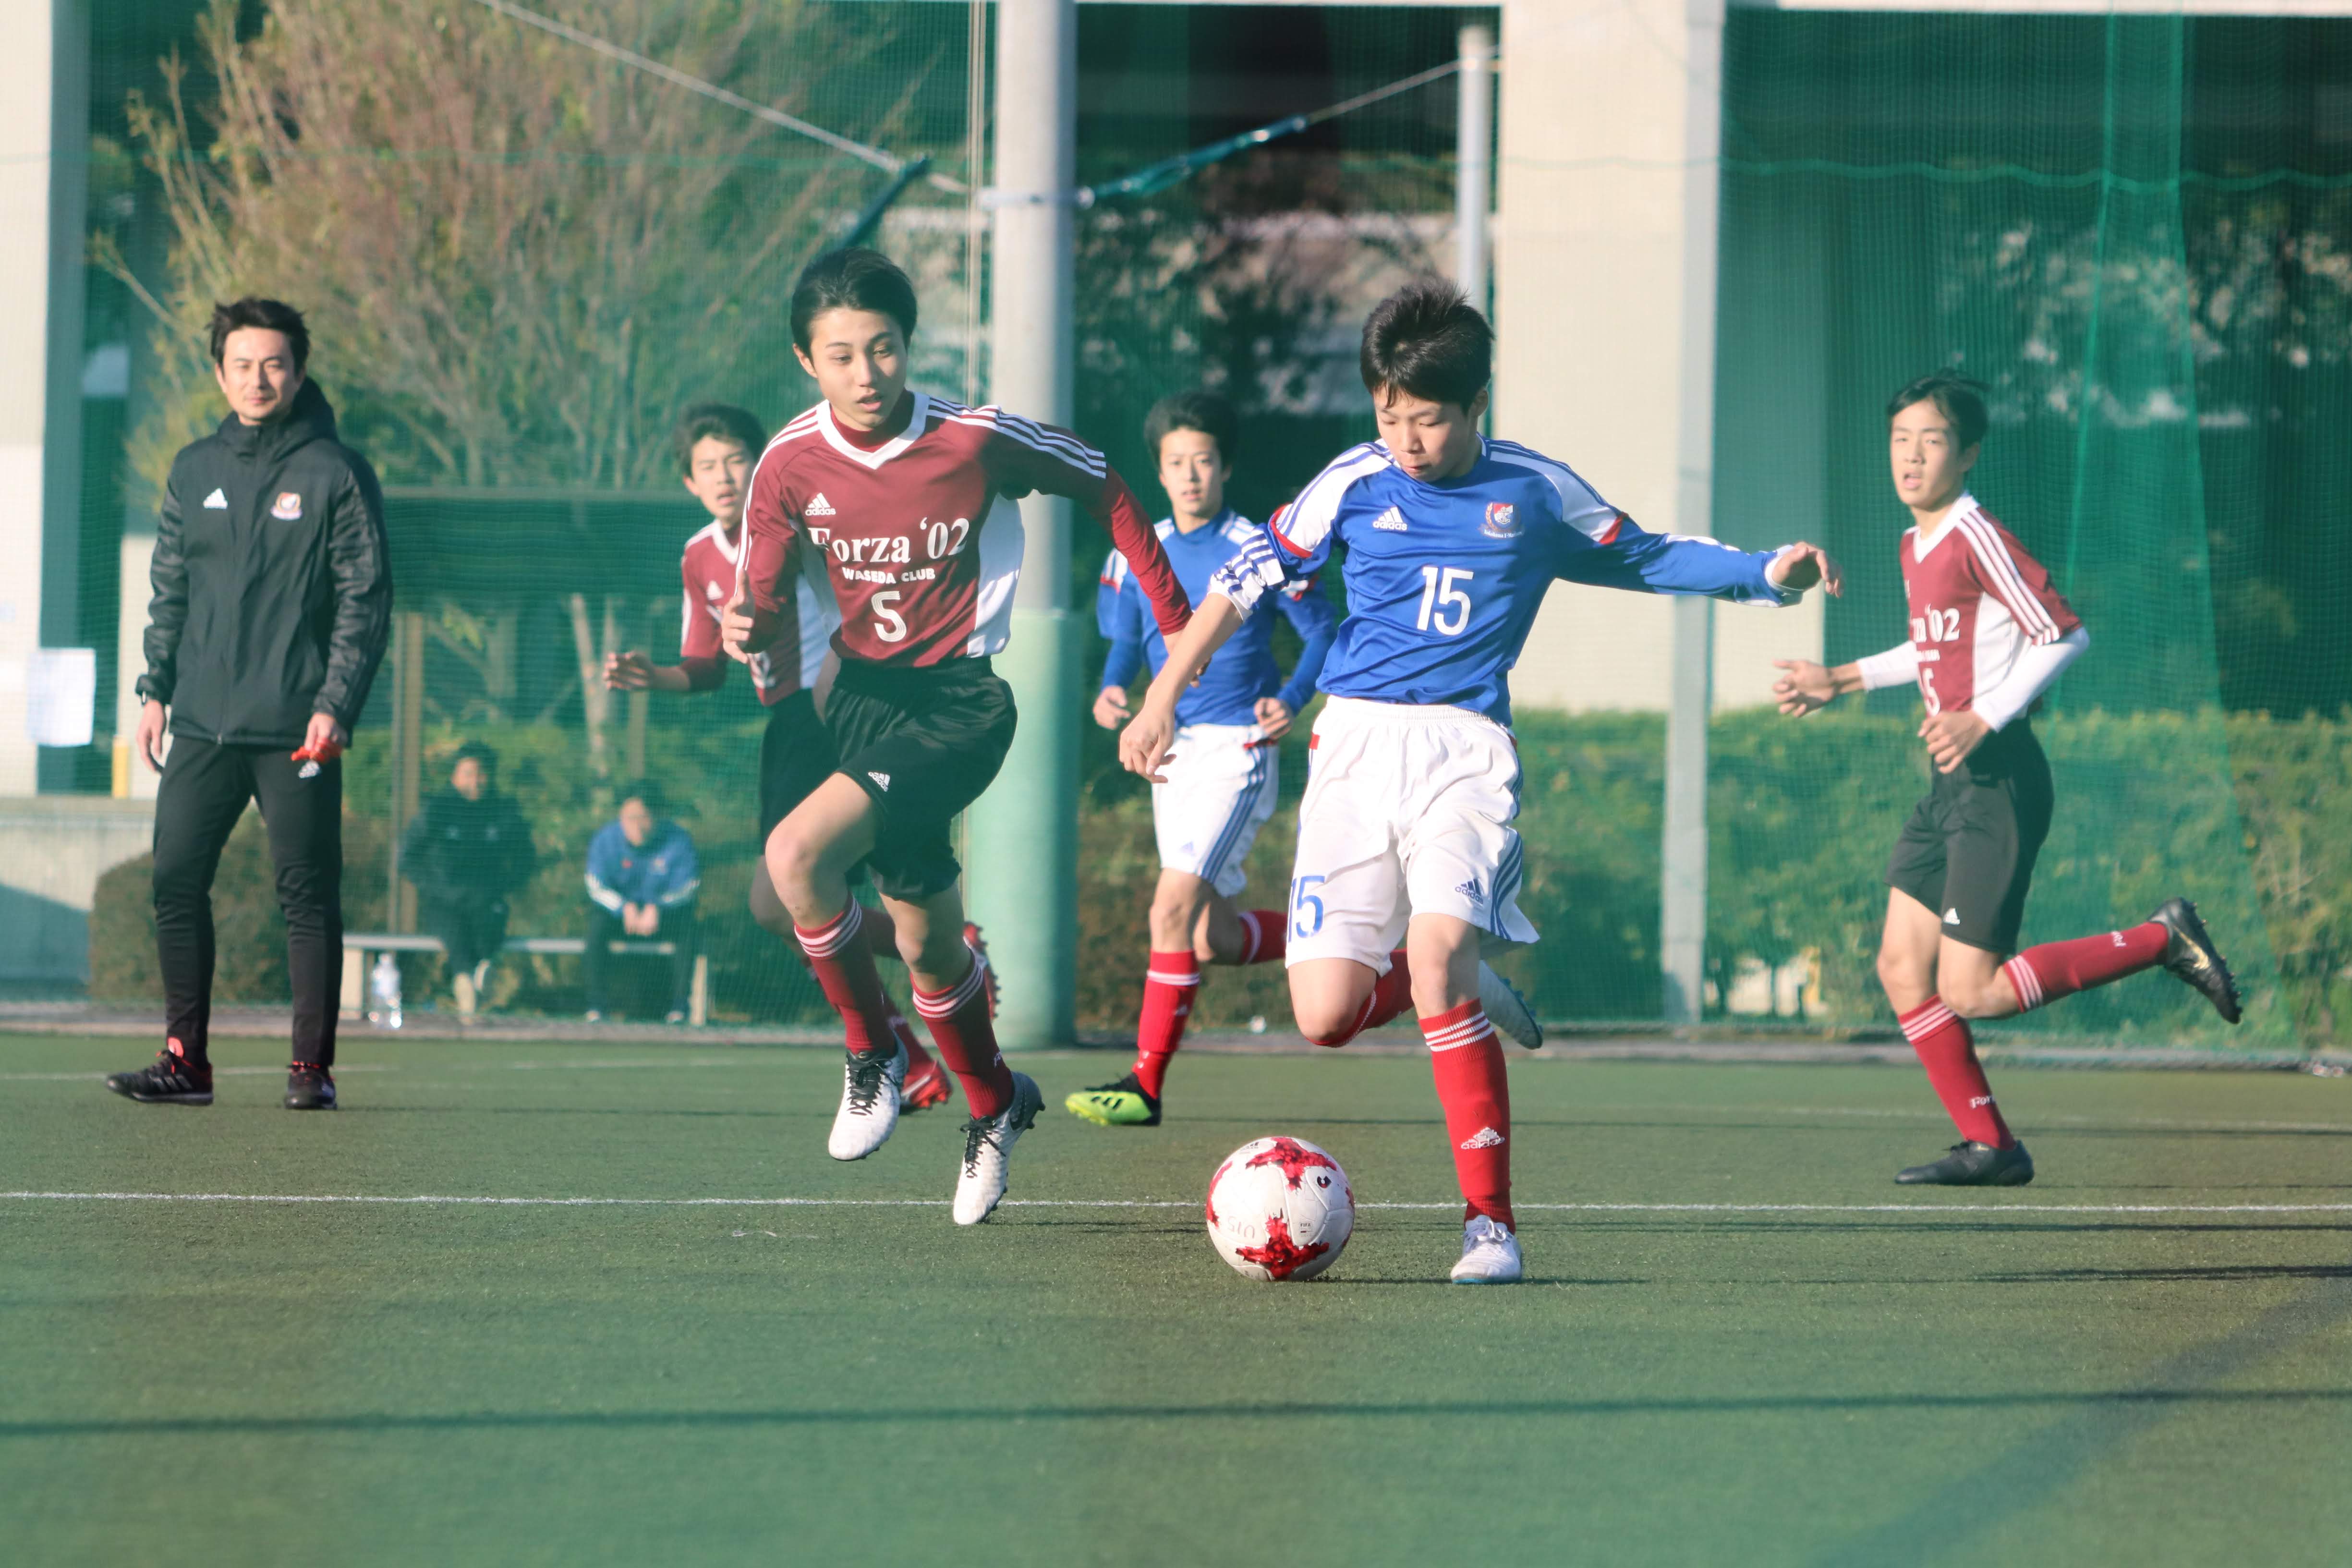 練習試合 横浜f マリノスジュニアユースu 15 Vs Forza 02 U 15 しんよこフットボールパーク マリノスユースとそのまわり